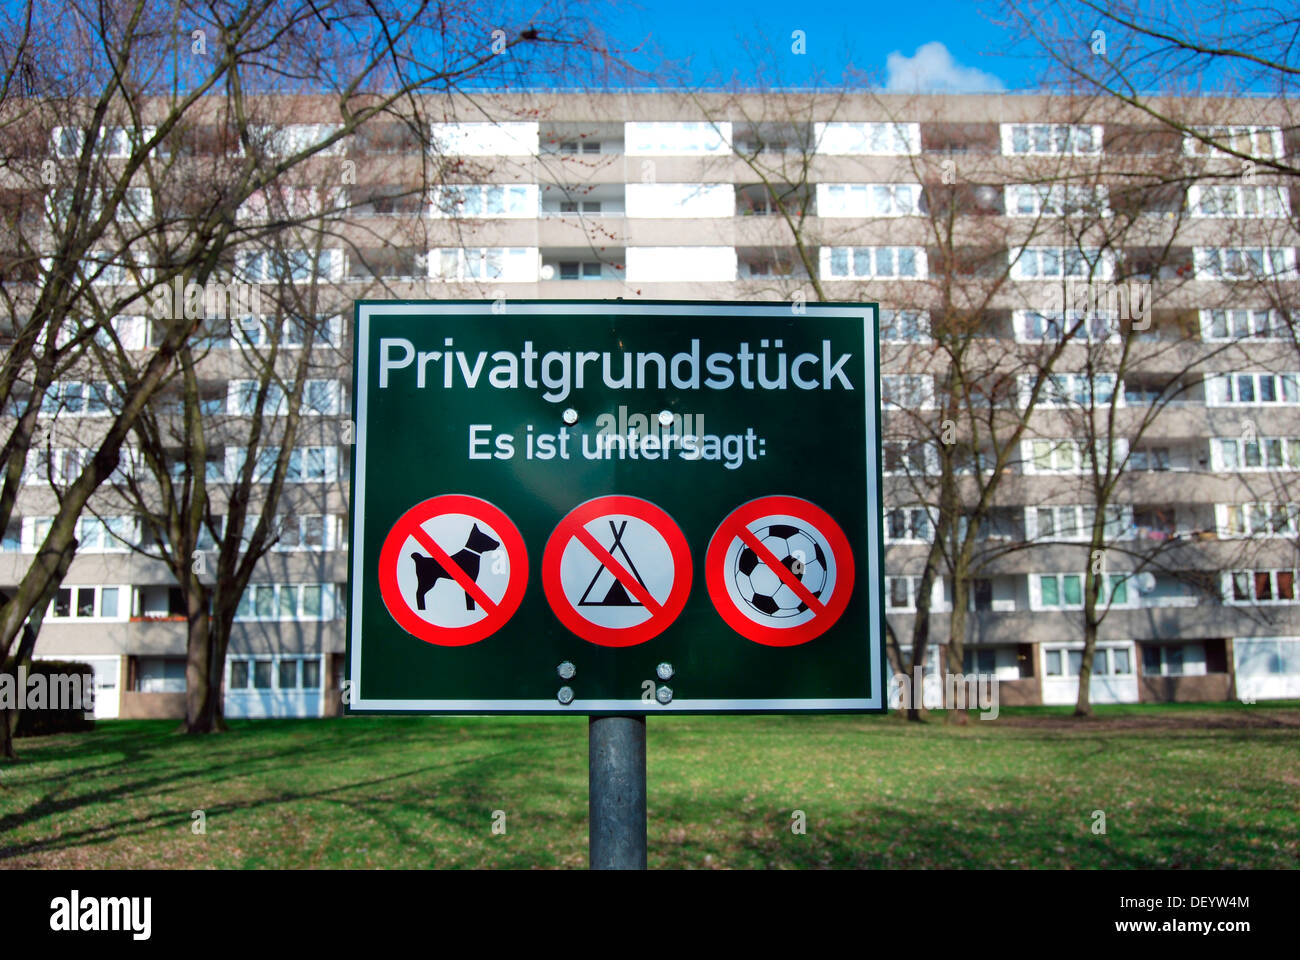 Signe, Privatgrundstueck, Allemand pour la propriété privée, Düsseldorf, Rhénanie du Nord-Westphalie Banque D'Images